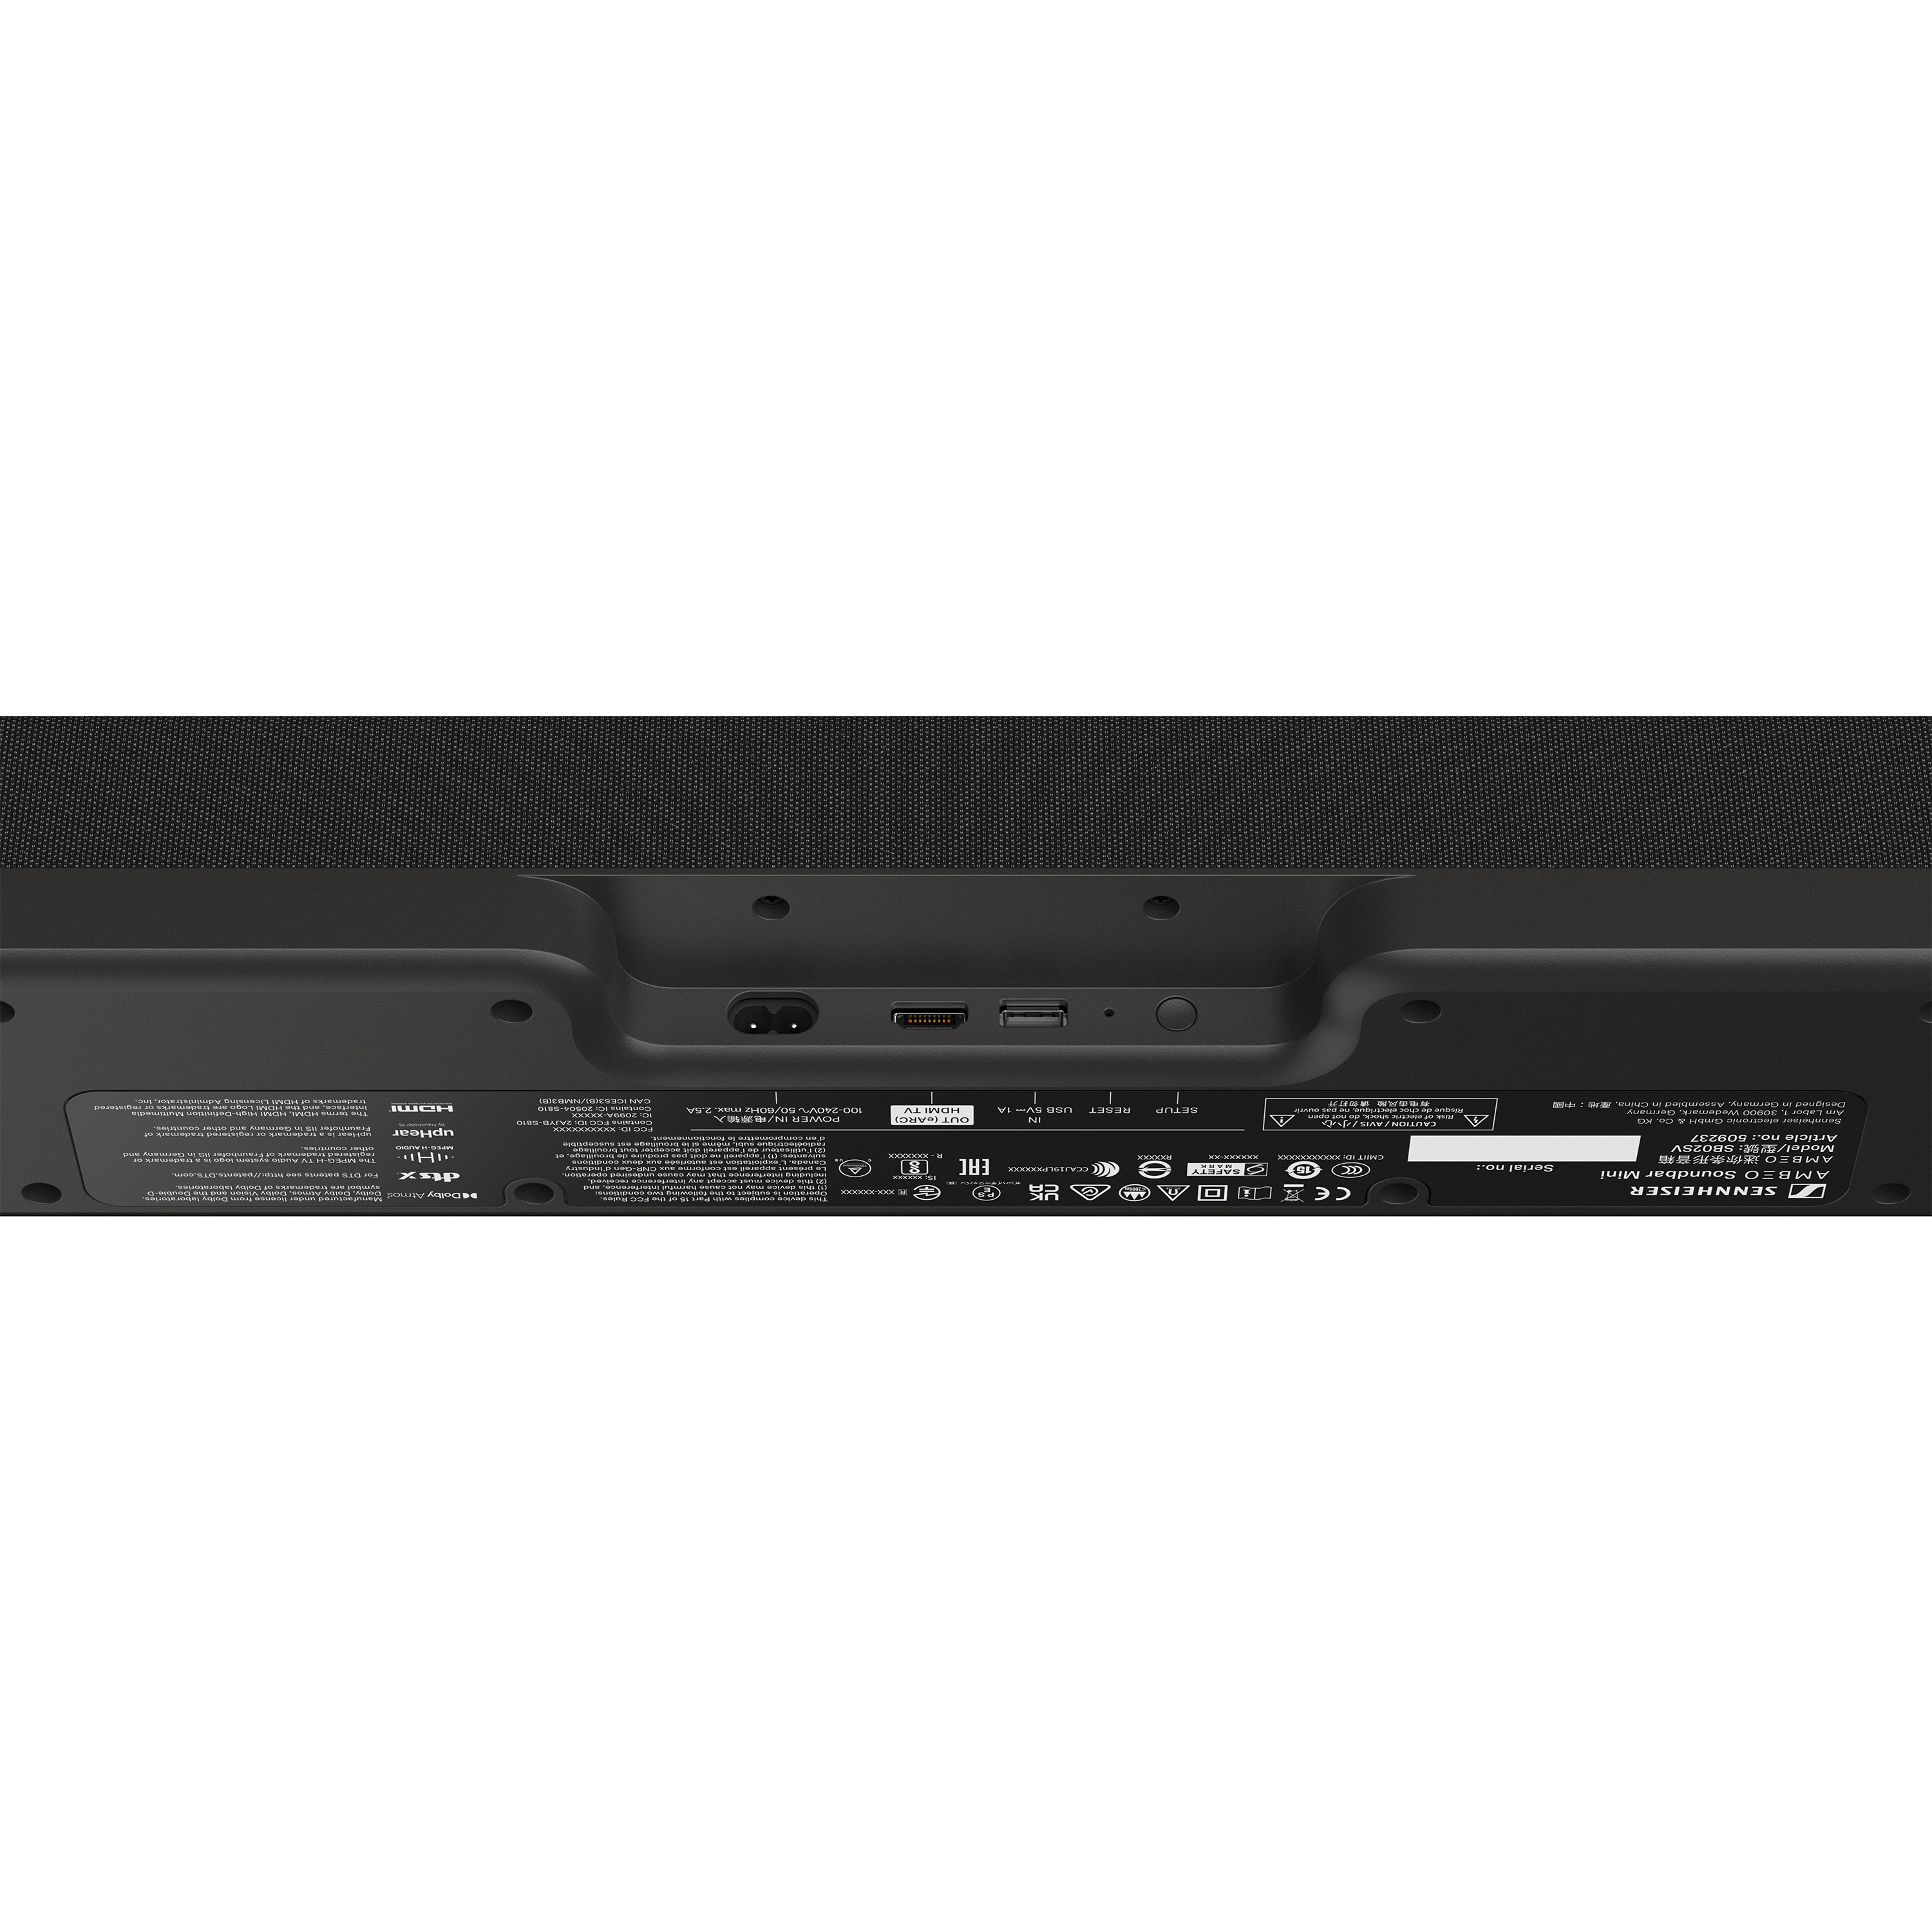 מקרן קול Sennheiser AMBEO Mini 7.1.4 250W - צבע שחור שנתיים אחריות ע